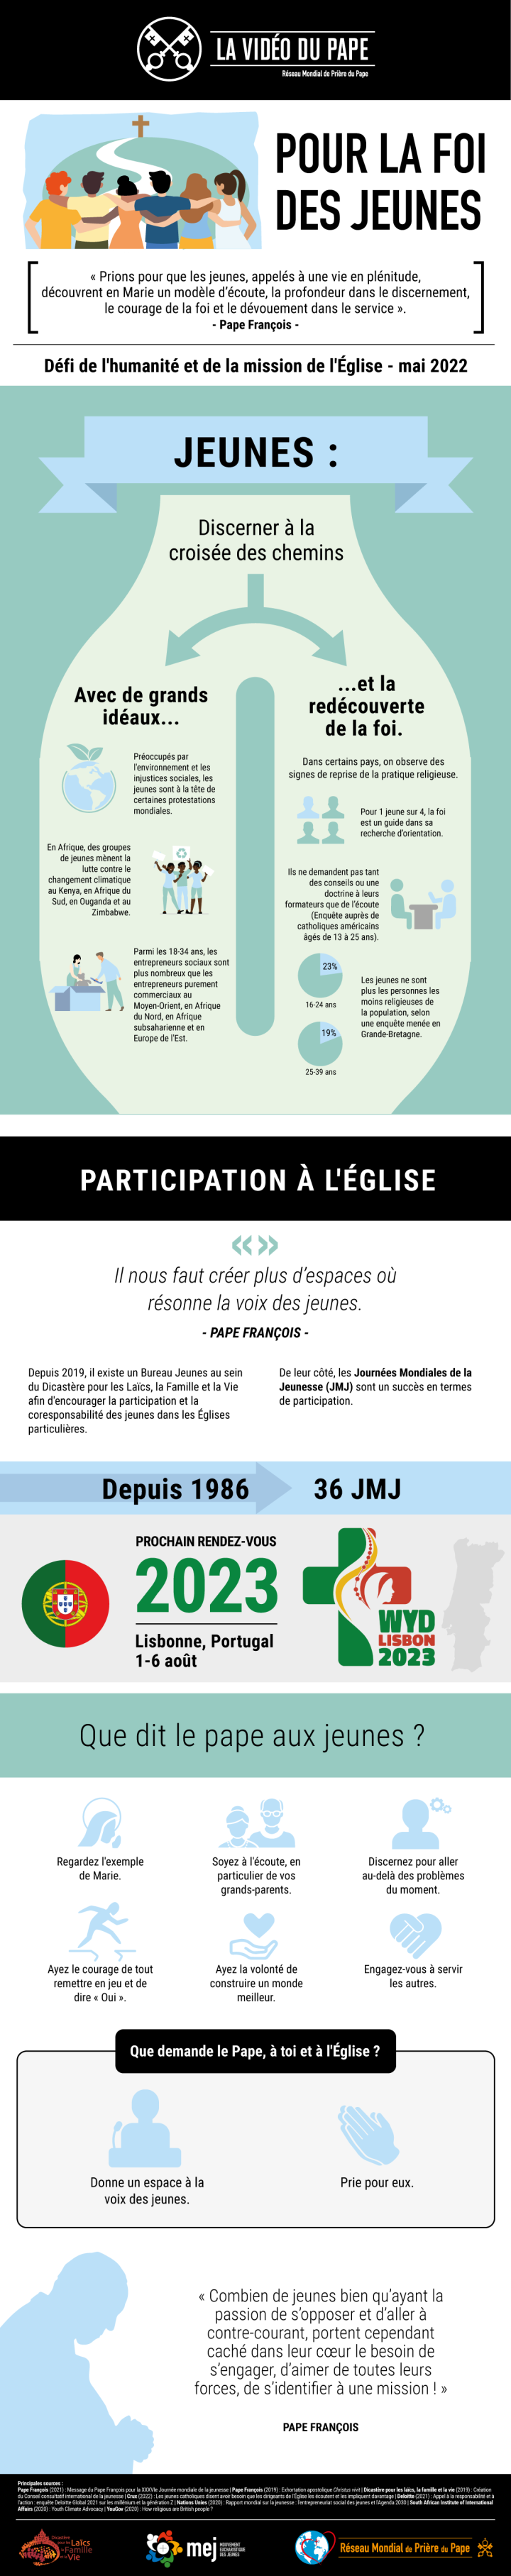 Infographic_-_TPV_5_2022__FR_-_Pour_la_foi_des_jeunes.png